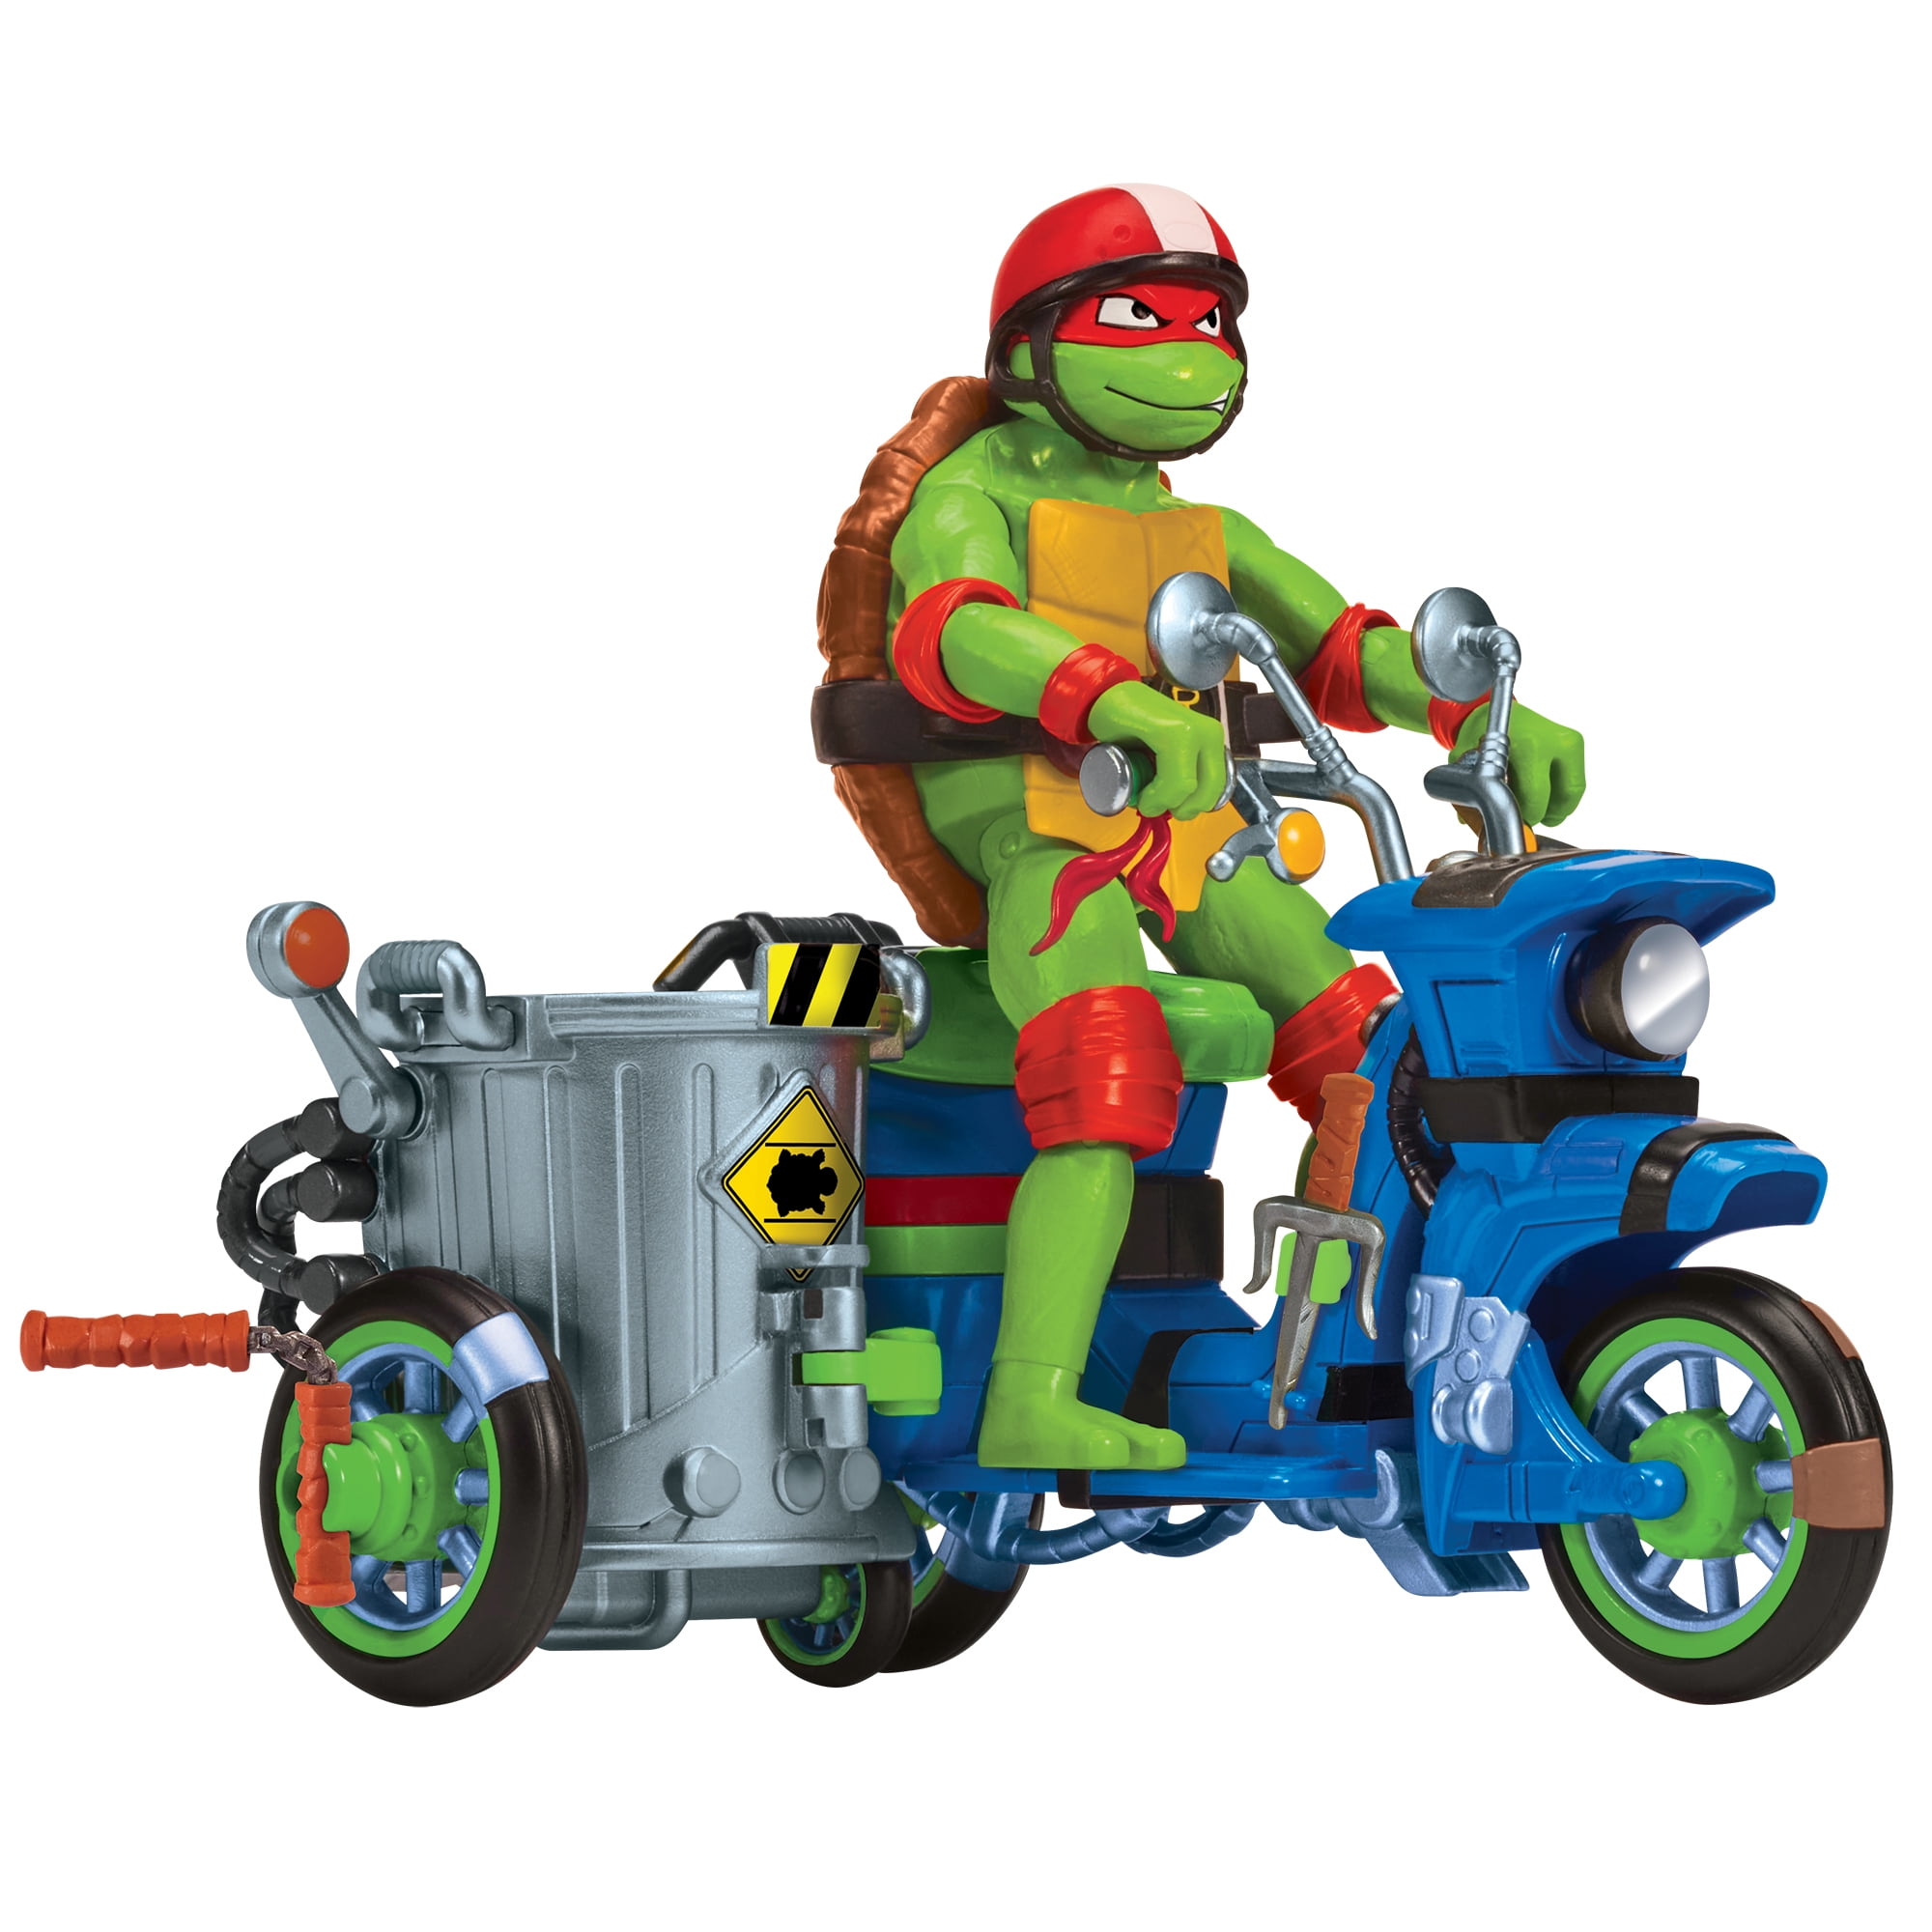  Teenage Mutant Ninja Turtles: Mutant Mayhem Making of a Ninja  Raphael Action Figure 3-Pack : Toys & Games